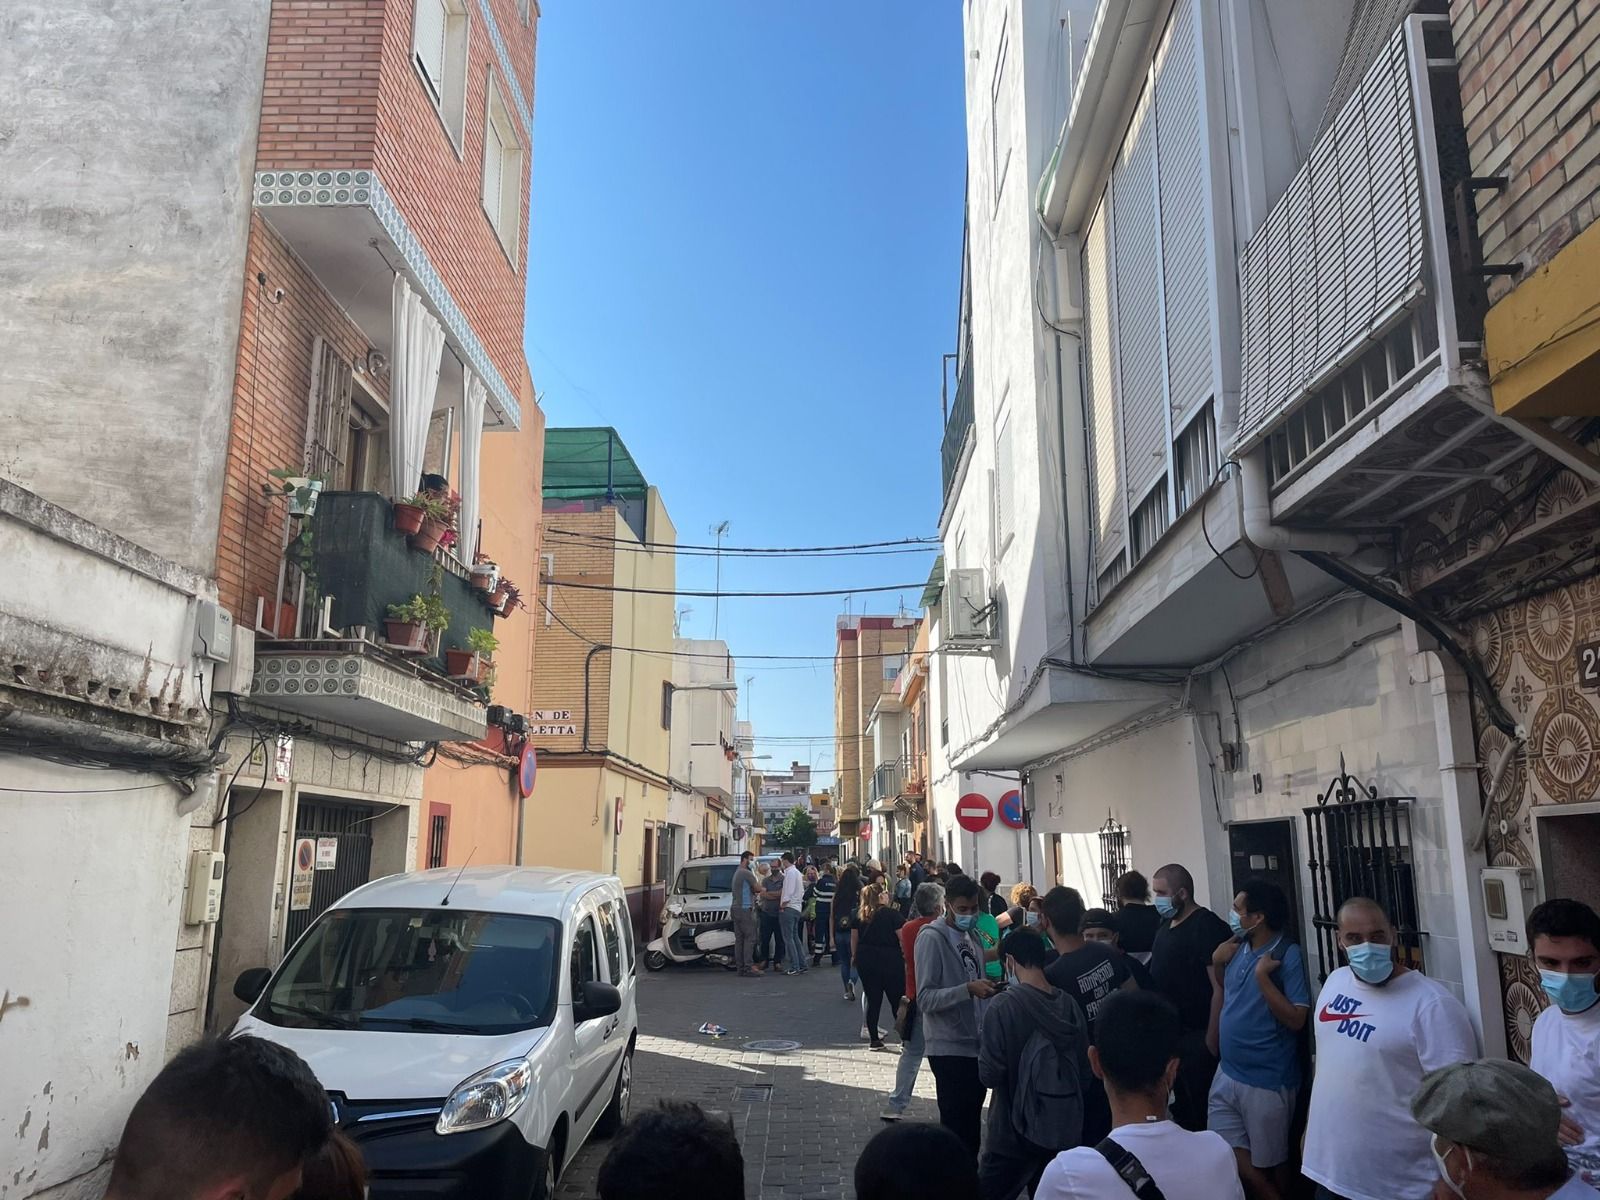 Convocatoria para parar el desahucio en la calle Fernando de Rojas de Su Eminencia, en Sevilla.